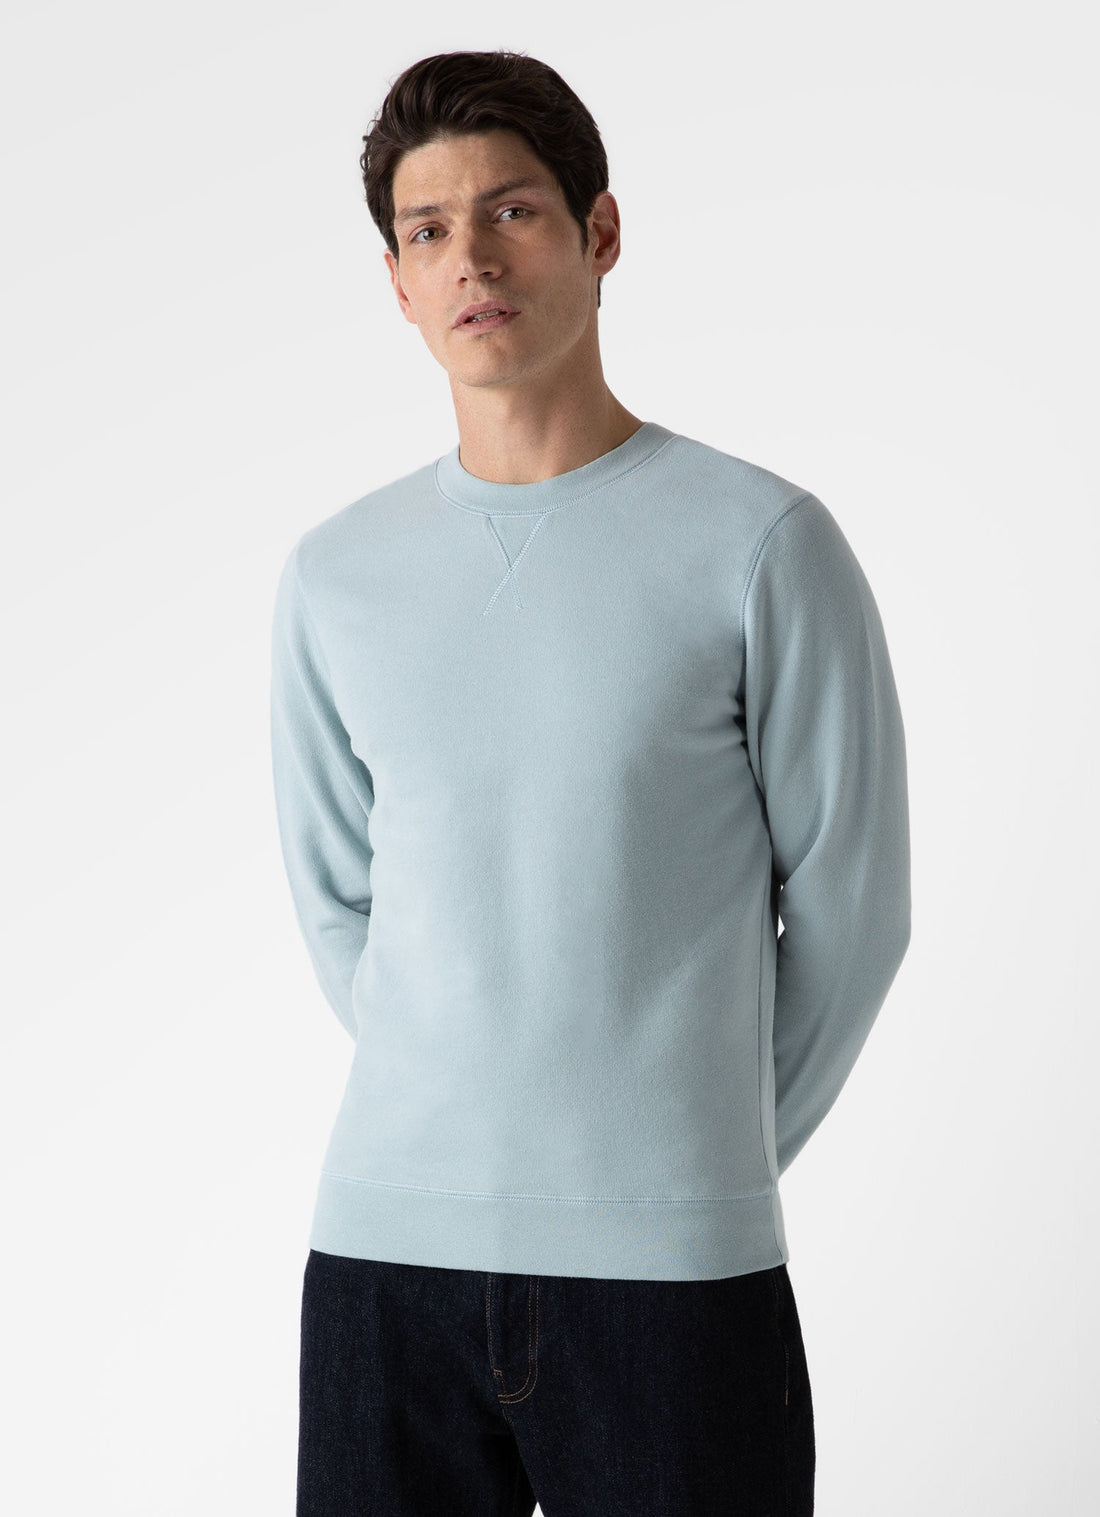 Men's Loopback Sweatshirt in Blue Sage